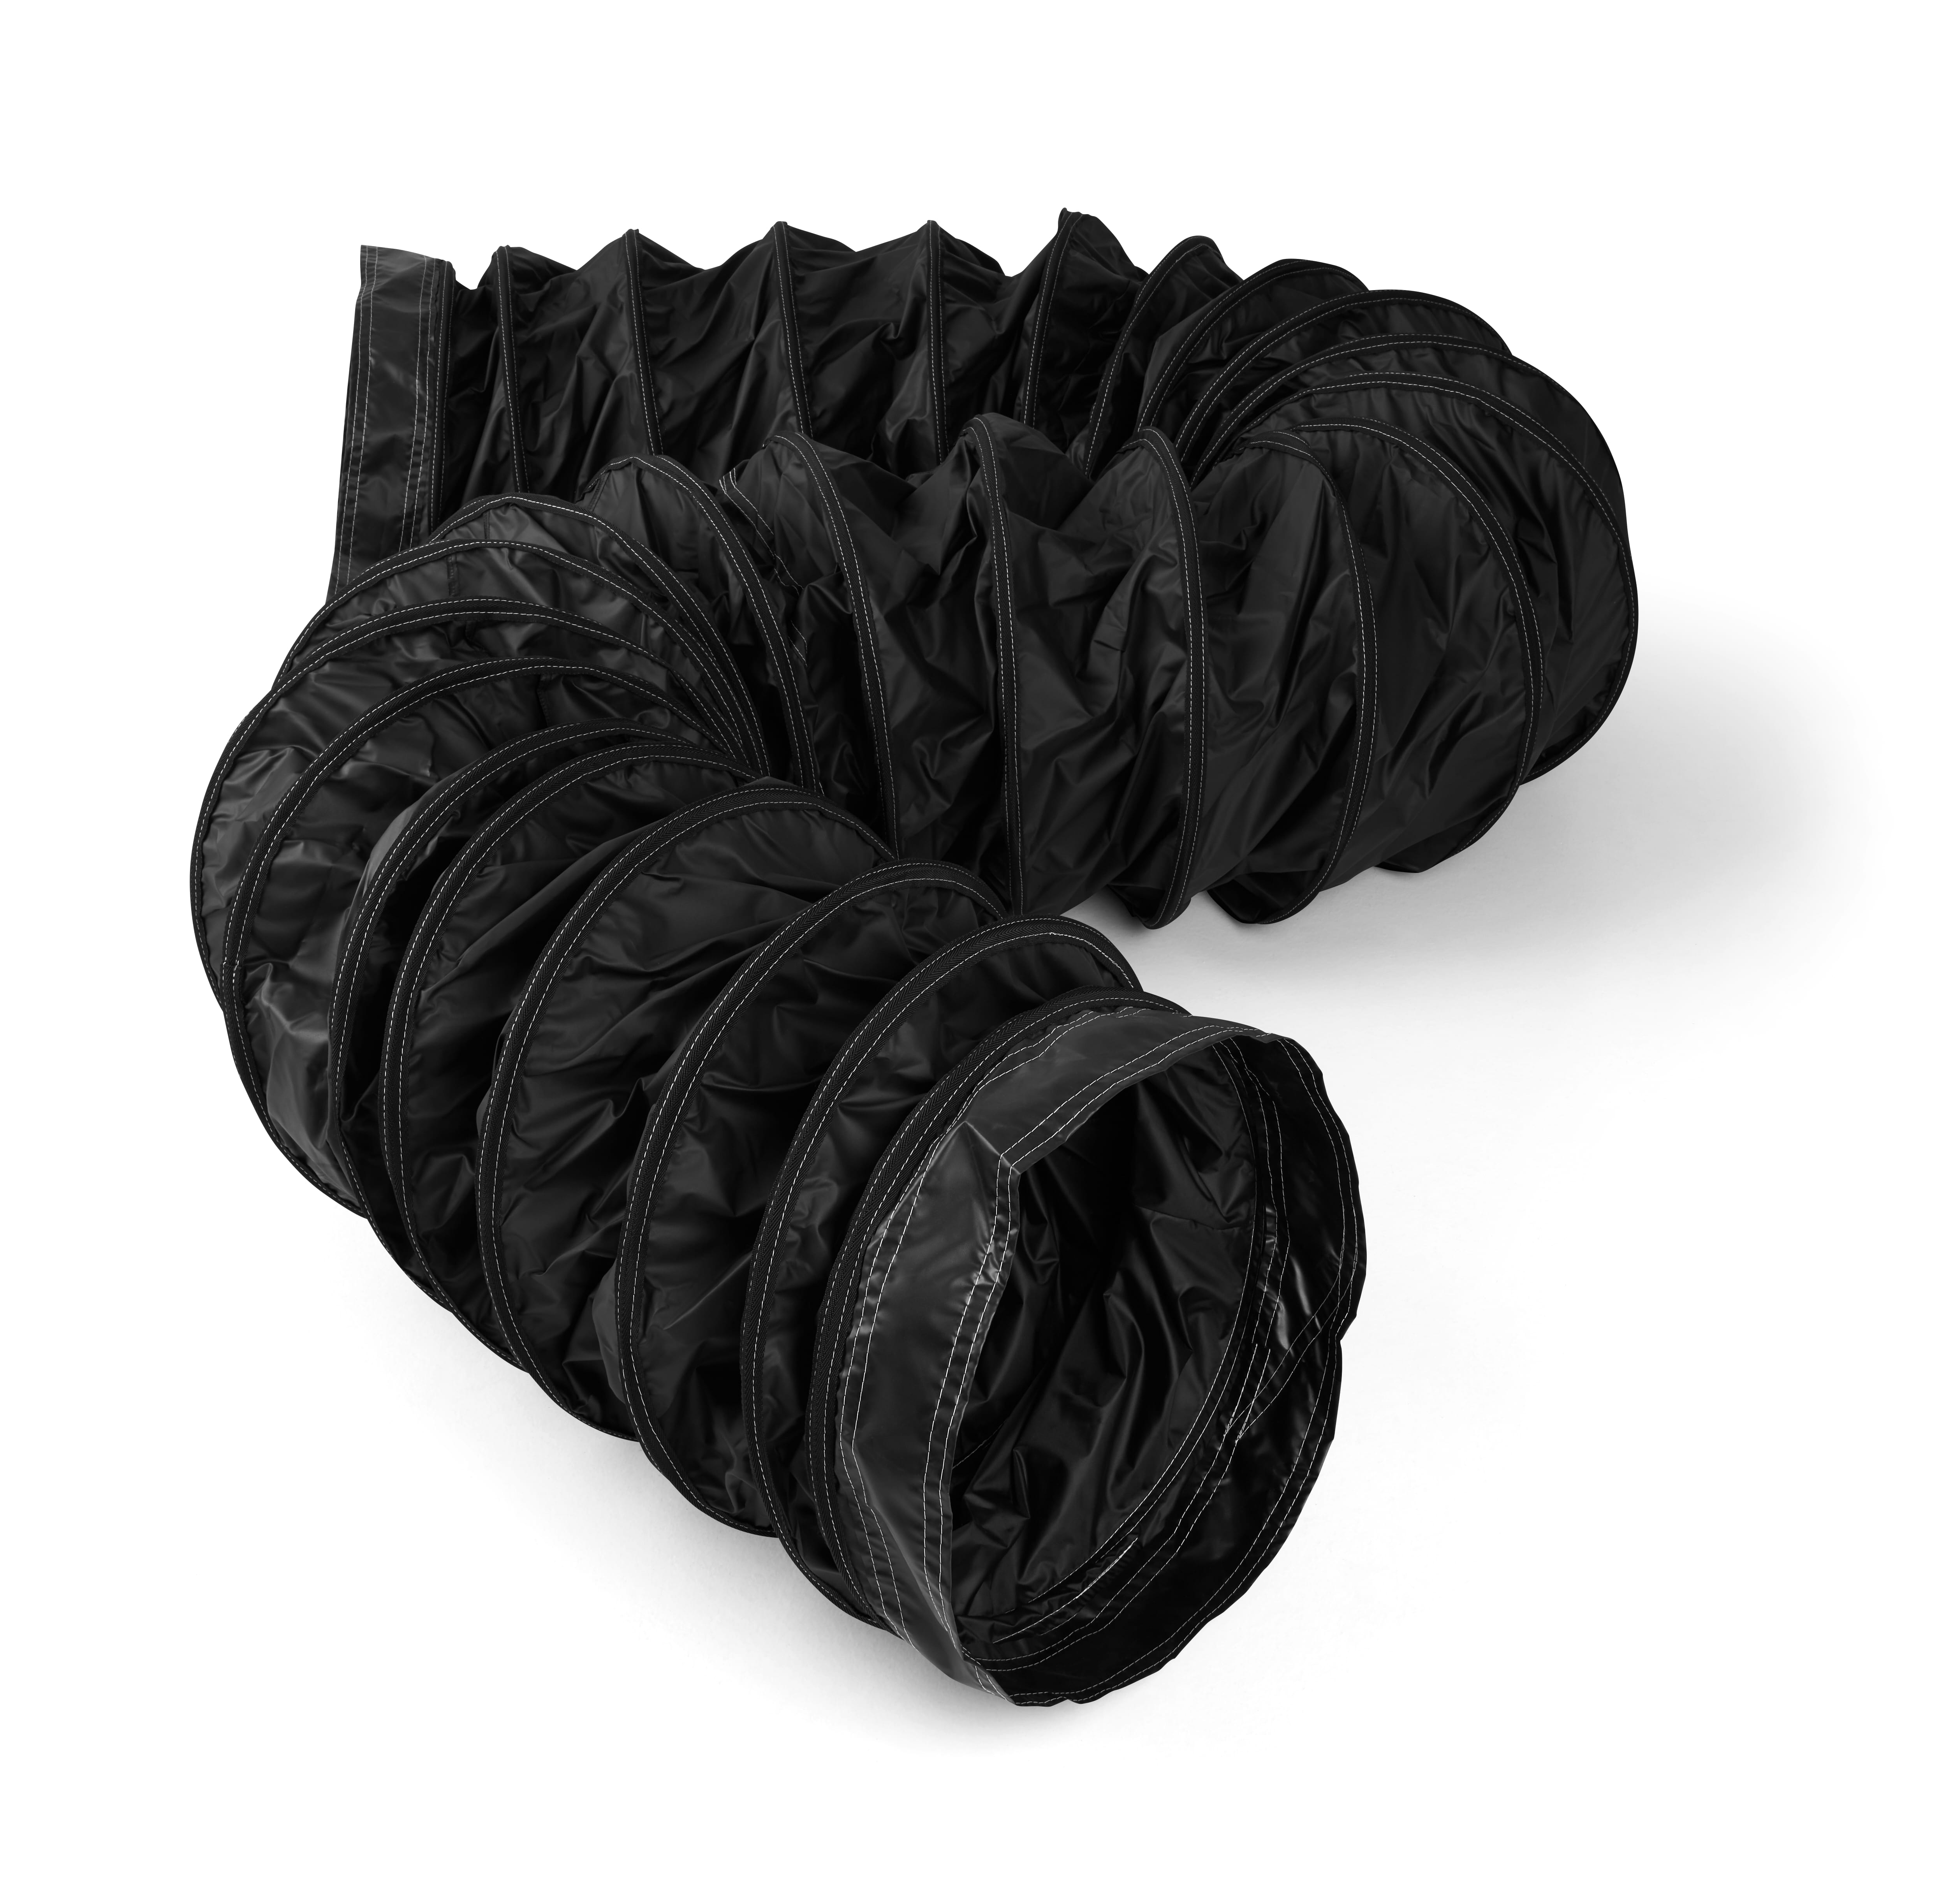 Warmluftschlauch aus schwer entflammbarem PVC-freiem Spezialgewebe - Länge 7,6m Farbe schwarz - Beständig von -45°C bis ca. +145°C